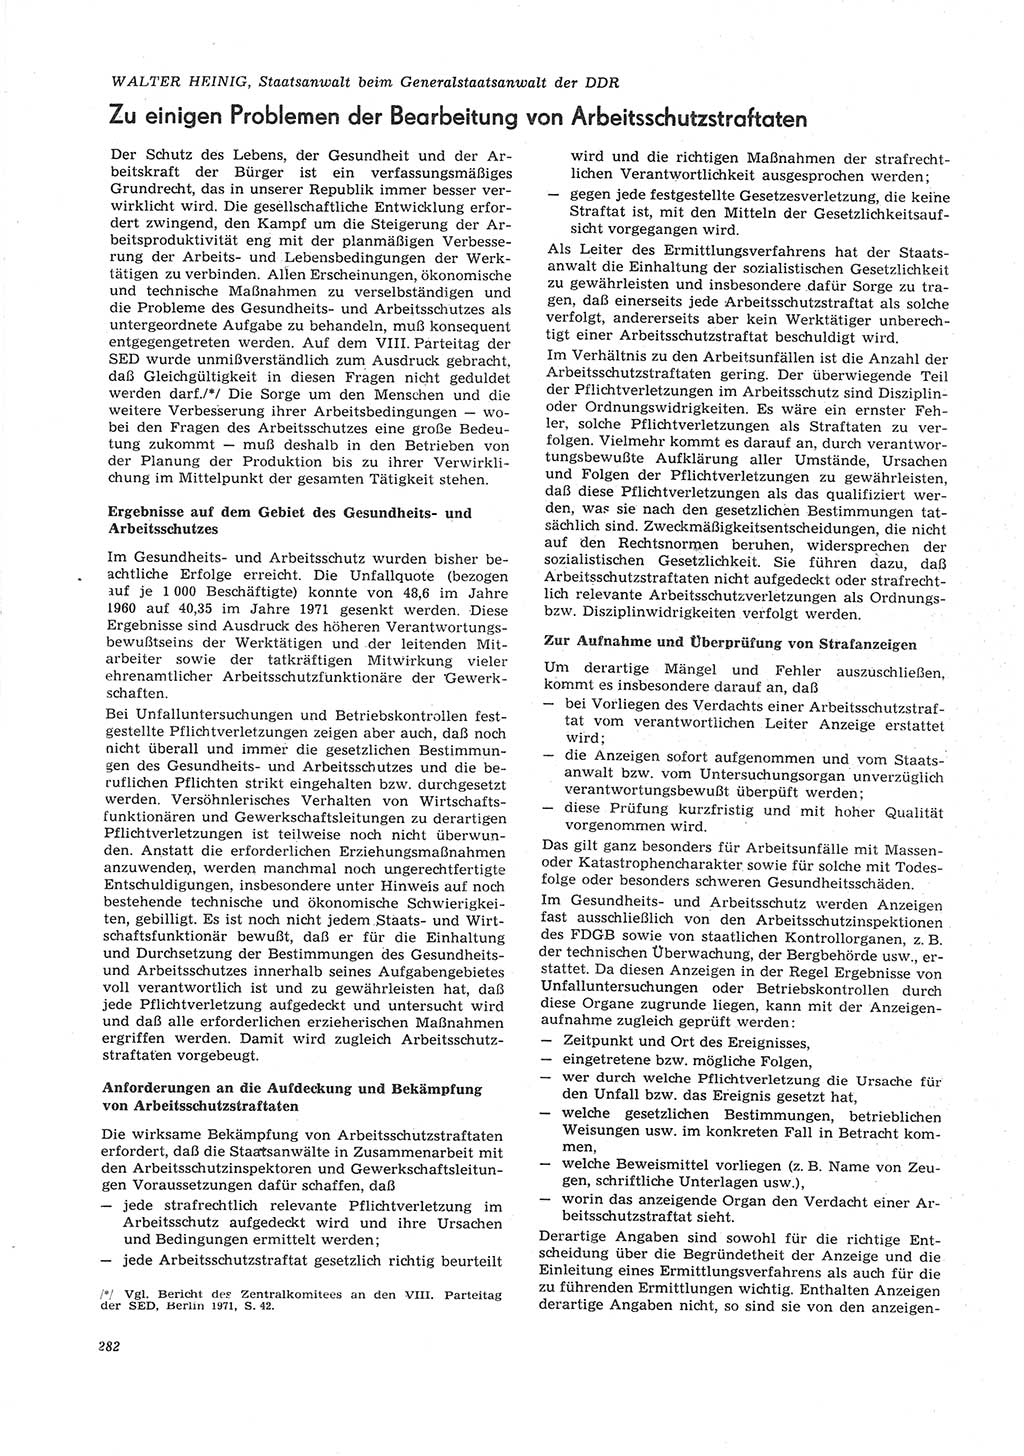 Neue Justiz (NJ), Zeitschrift für Recht und Rechtswissenschaft [Deutsche Demokratische Republik (DDR)], 26. Jahrgang 1972, Seite 282 (NJ DDR 1972, S. 282)